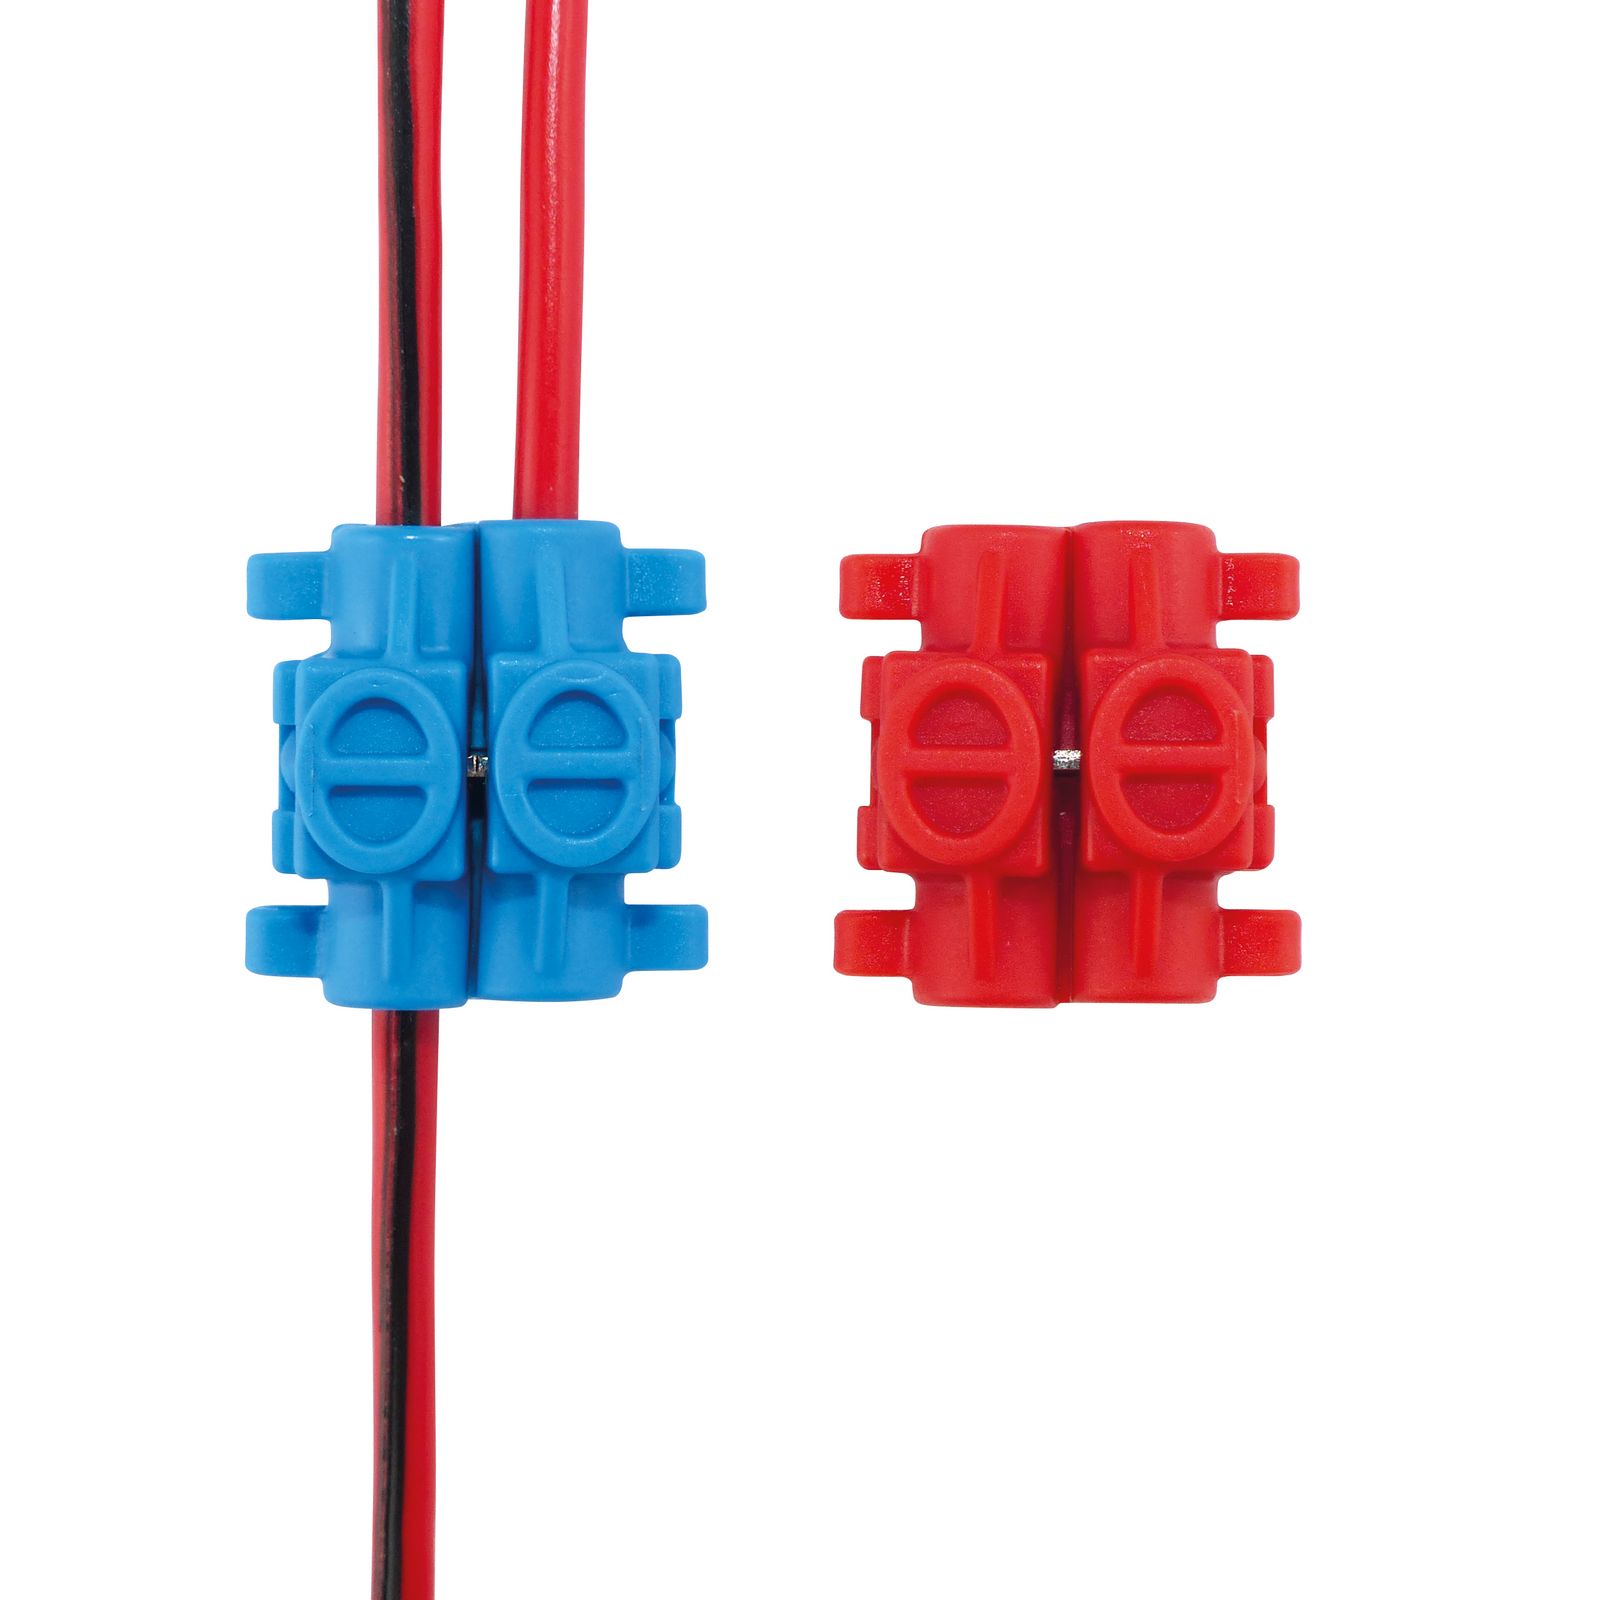 Klemmverbinder 10 Stück rot/blau Set für Kabel 0.5 - 2.5mm²-/bilder/big/206989_4.jpg